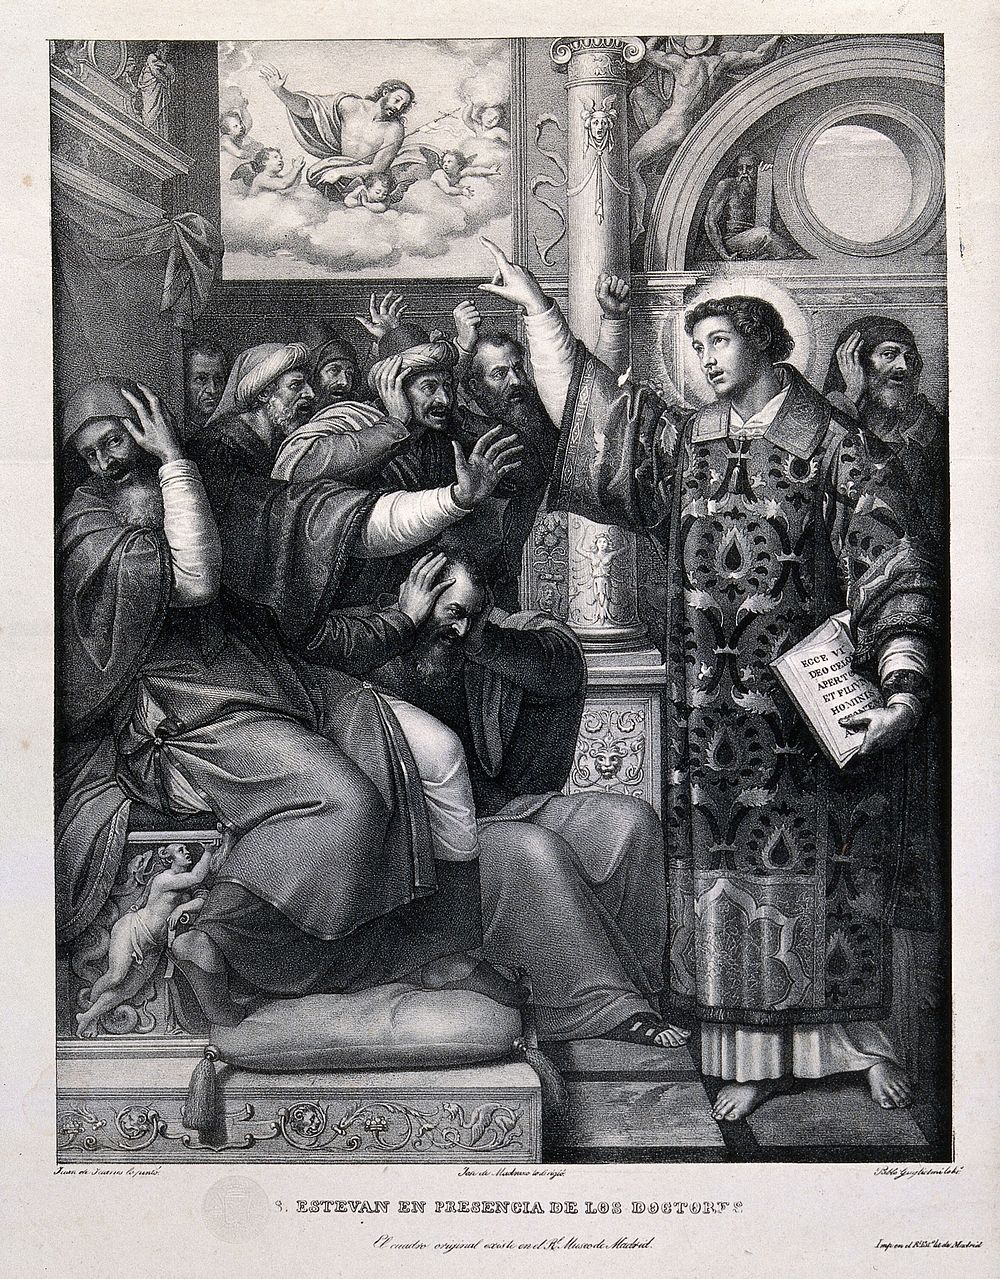 Saint Stephen, the first martyr. Lithograph by P. Guglielmi after Masip (Juan de Juanes).